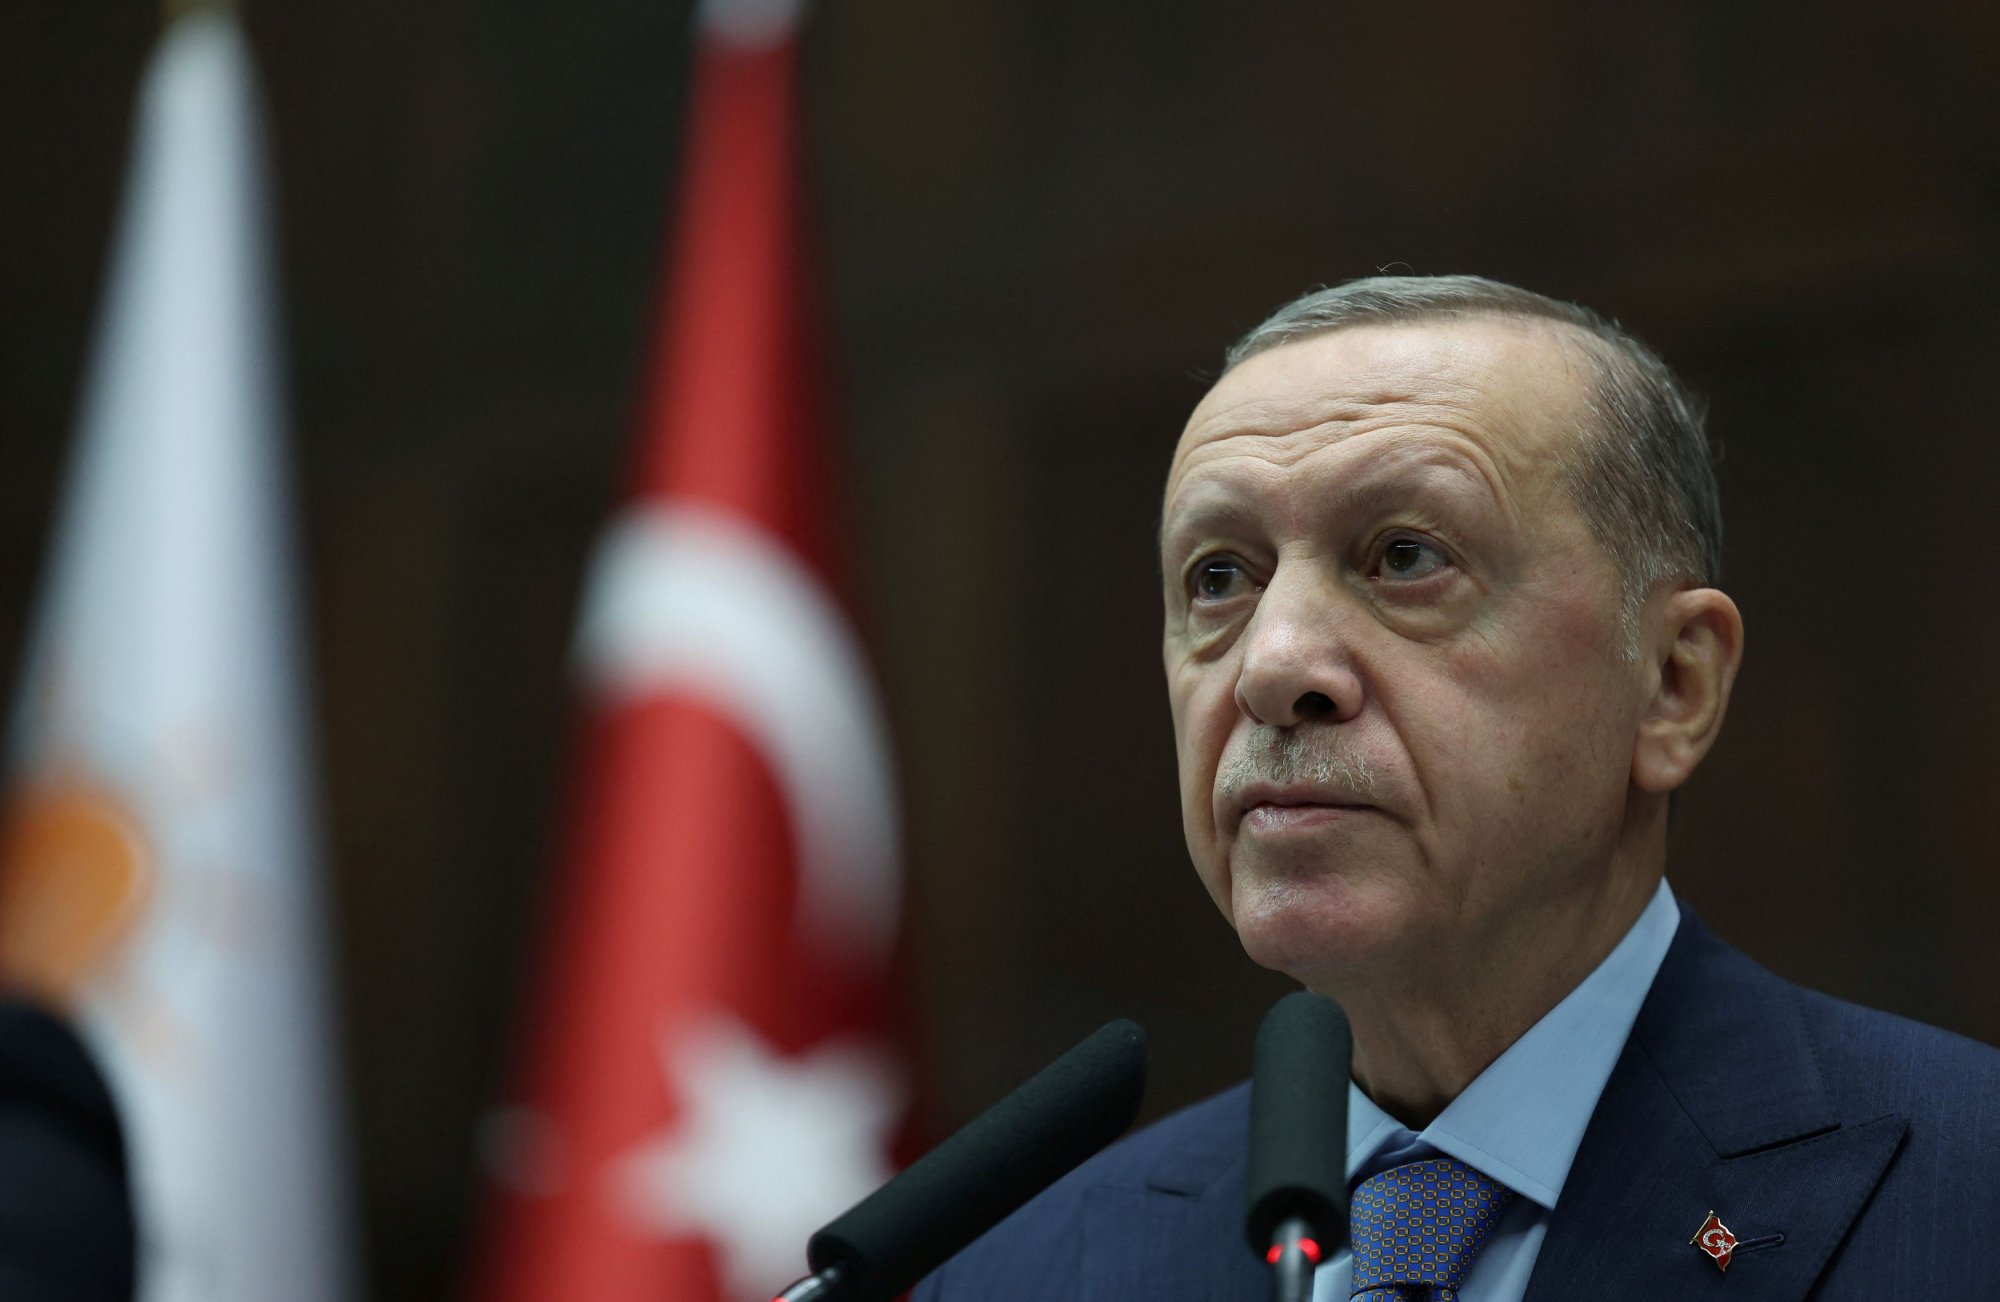 Τουρκία: Τι κρύβεται πίσω από την πρότασή της για λύση δυο κρατών στην Κύπρο και την Παλαιστίνη